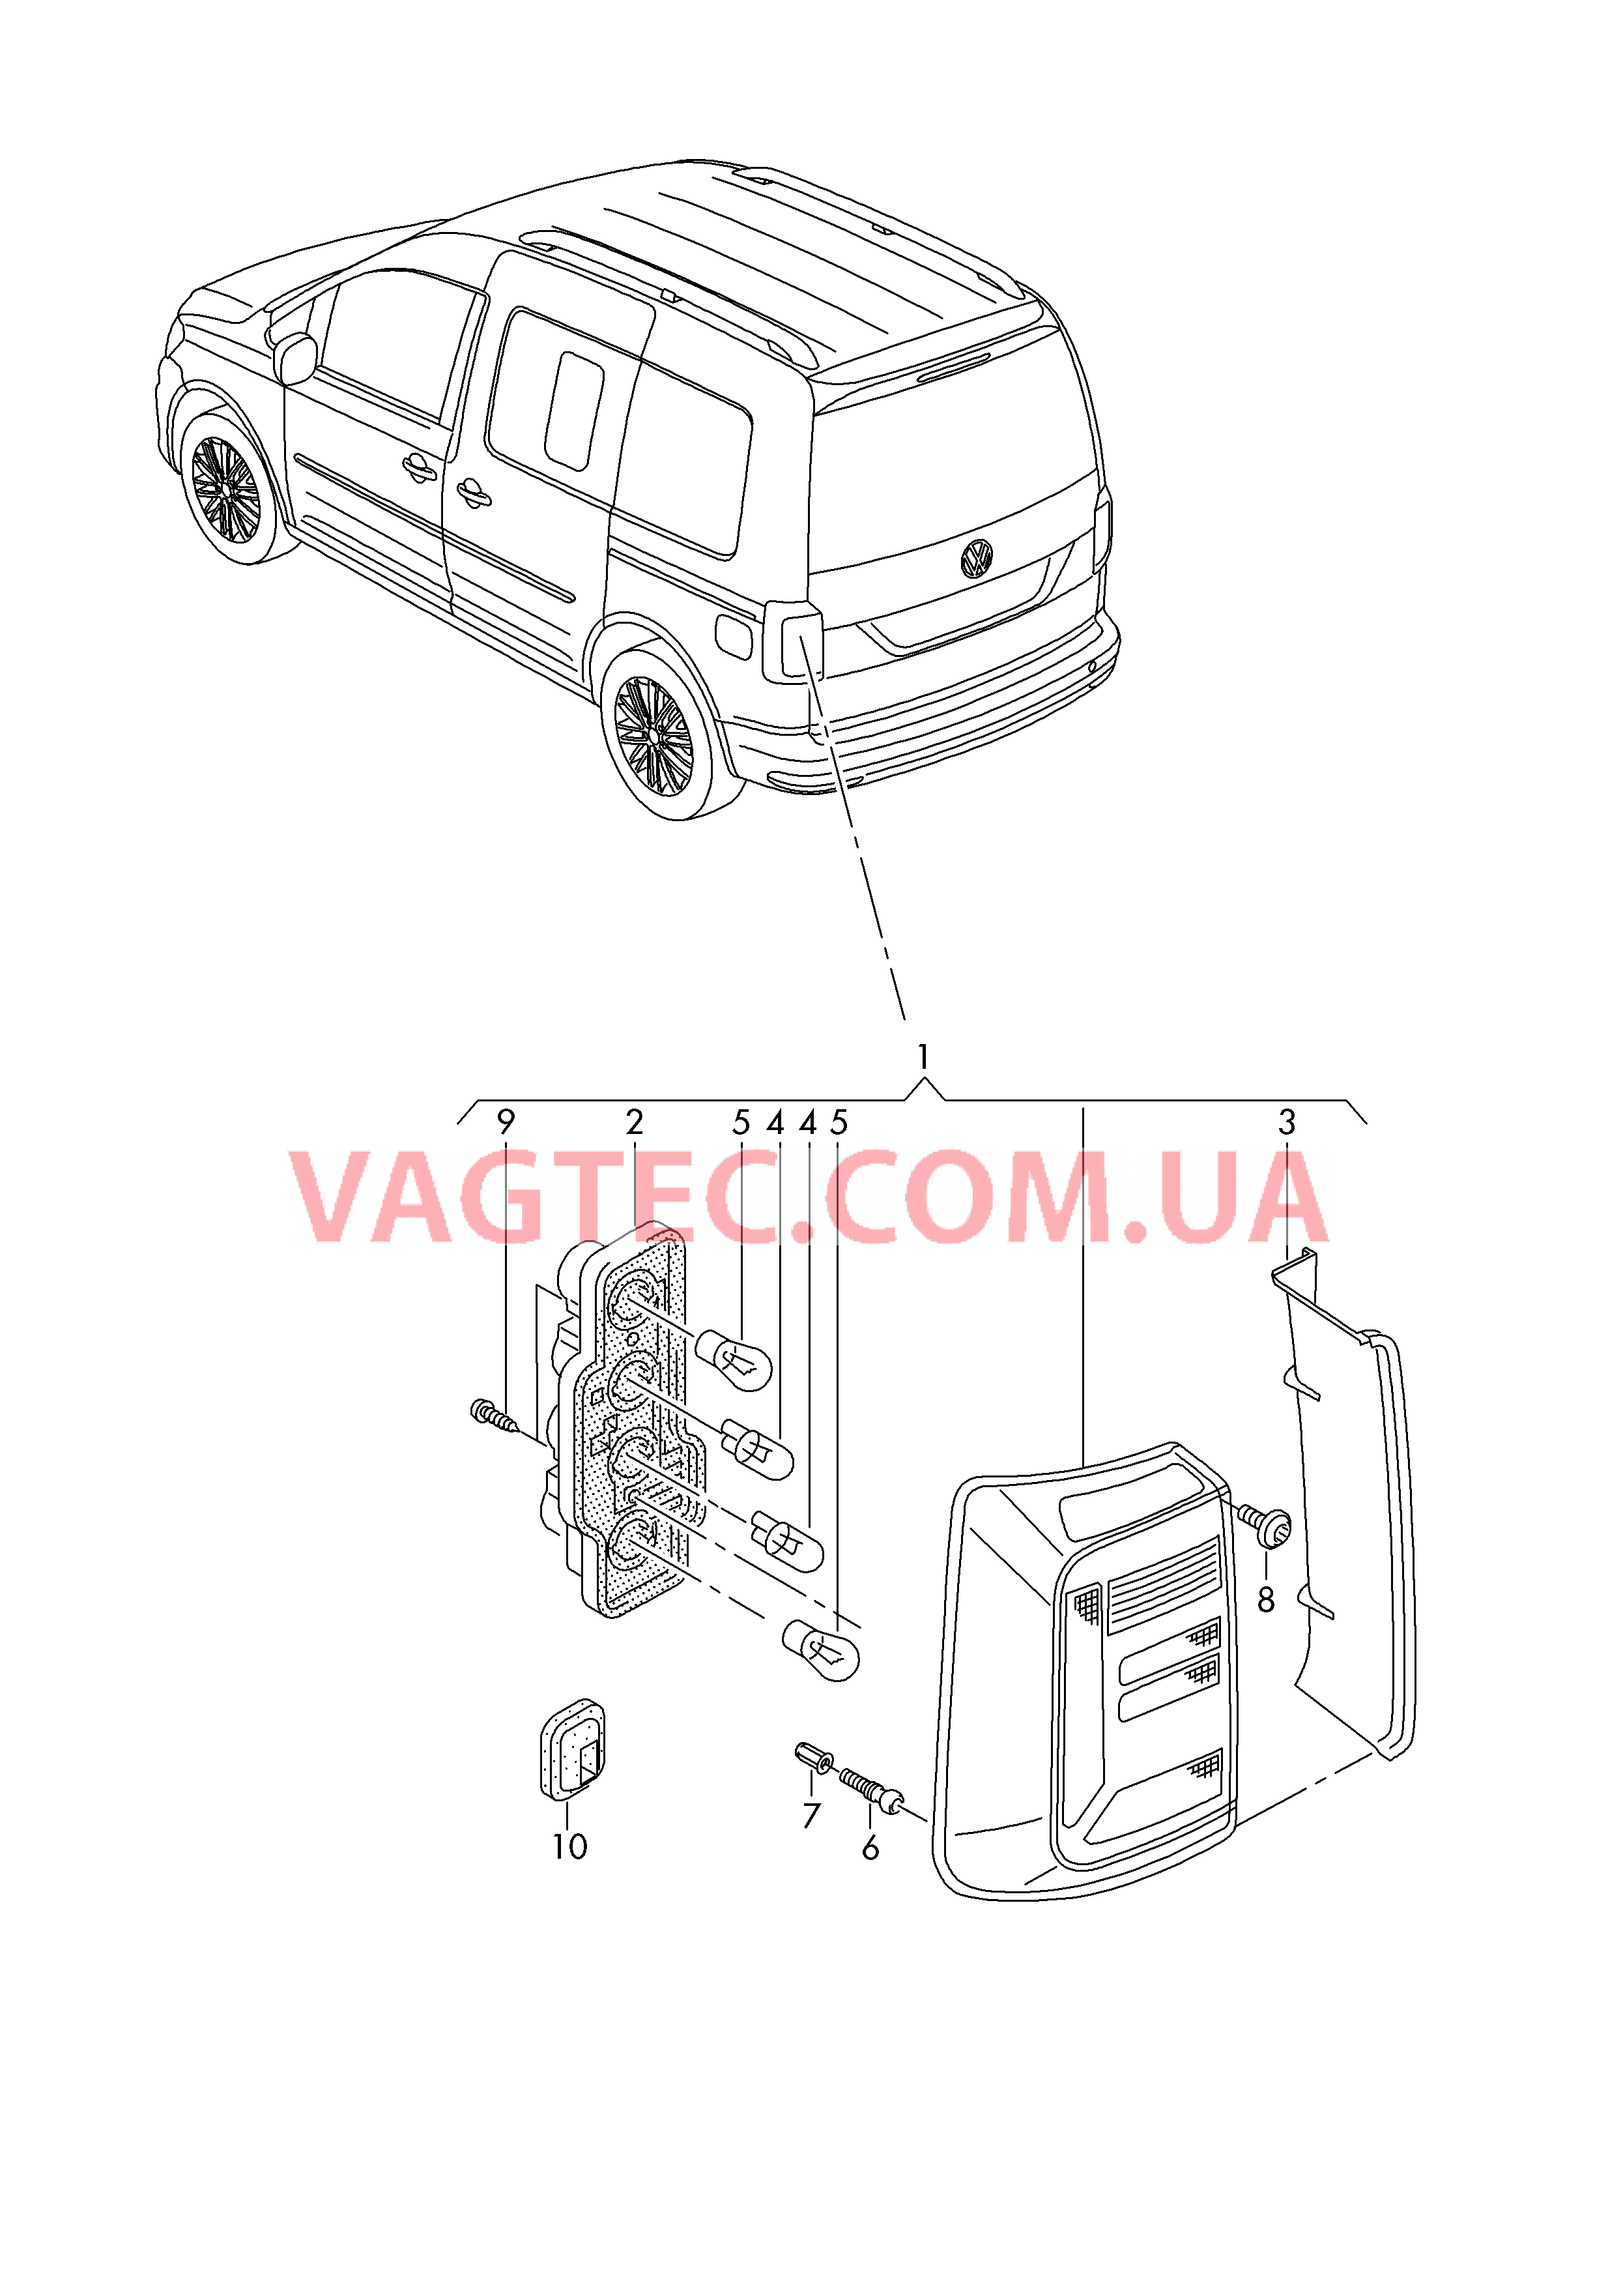 Задний фонарь для а/м с крышкой багажного отсека  для VOLKSWAGEN Caddy 2016